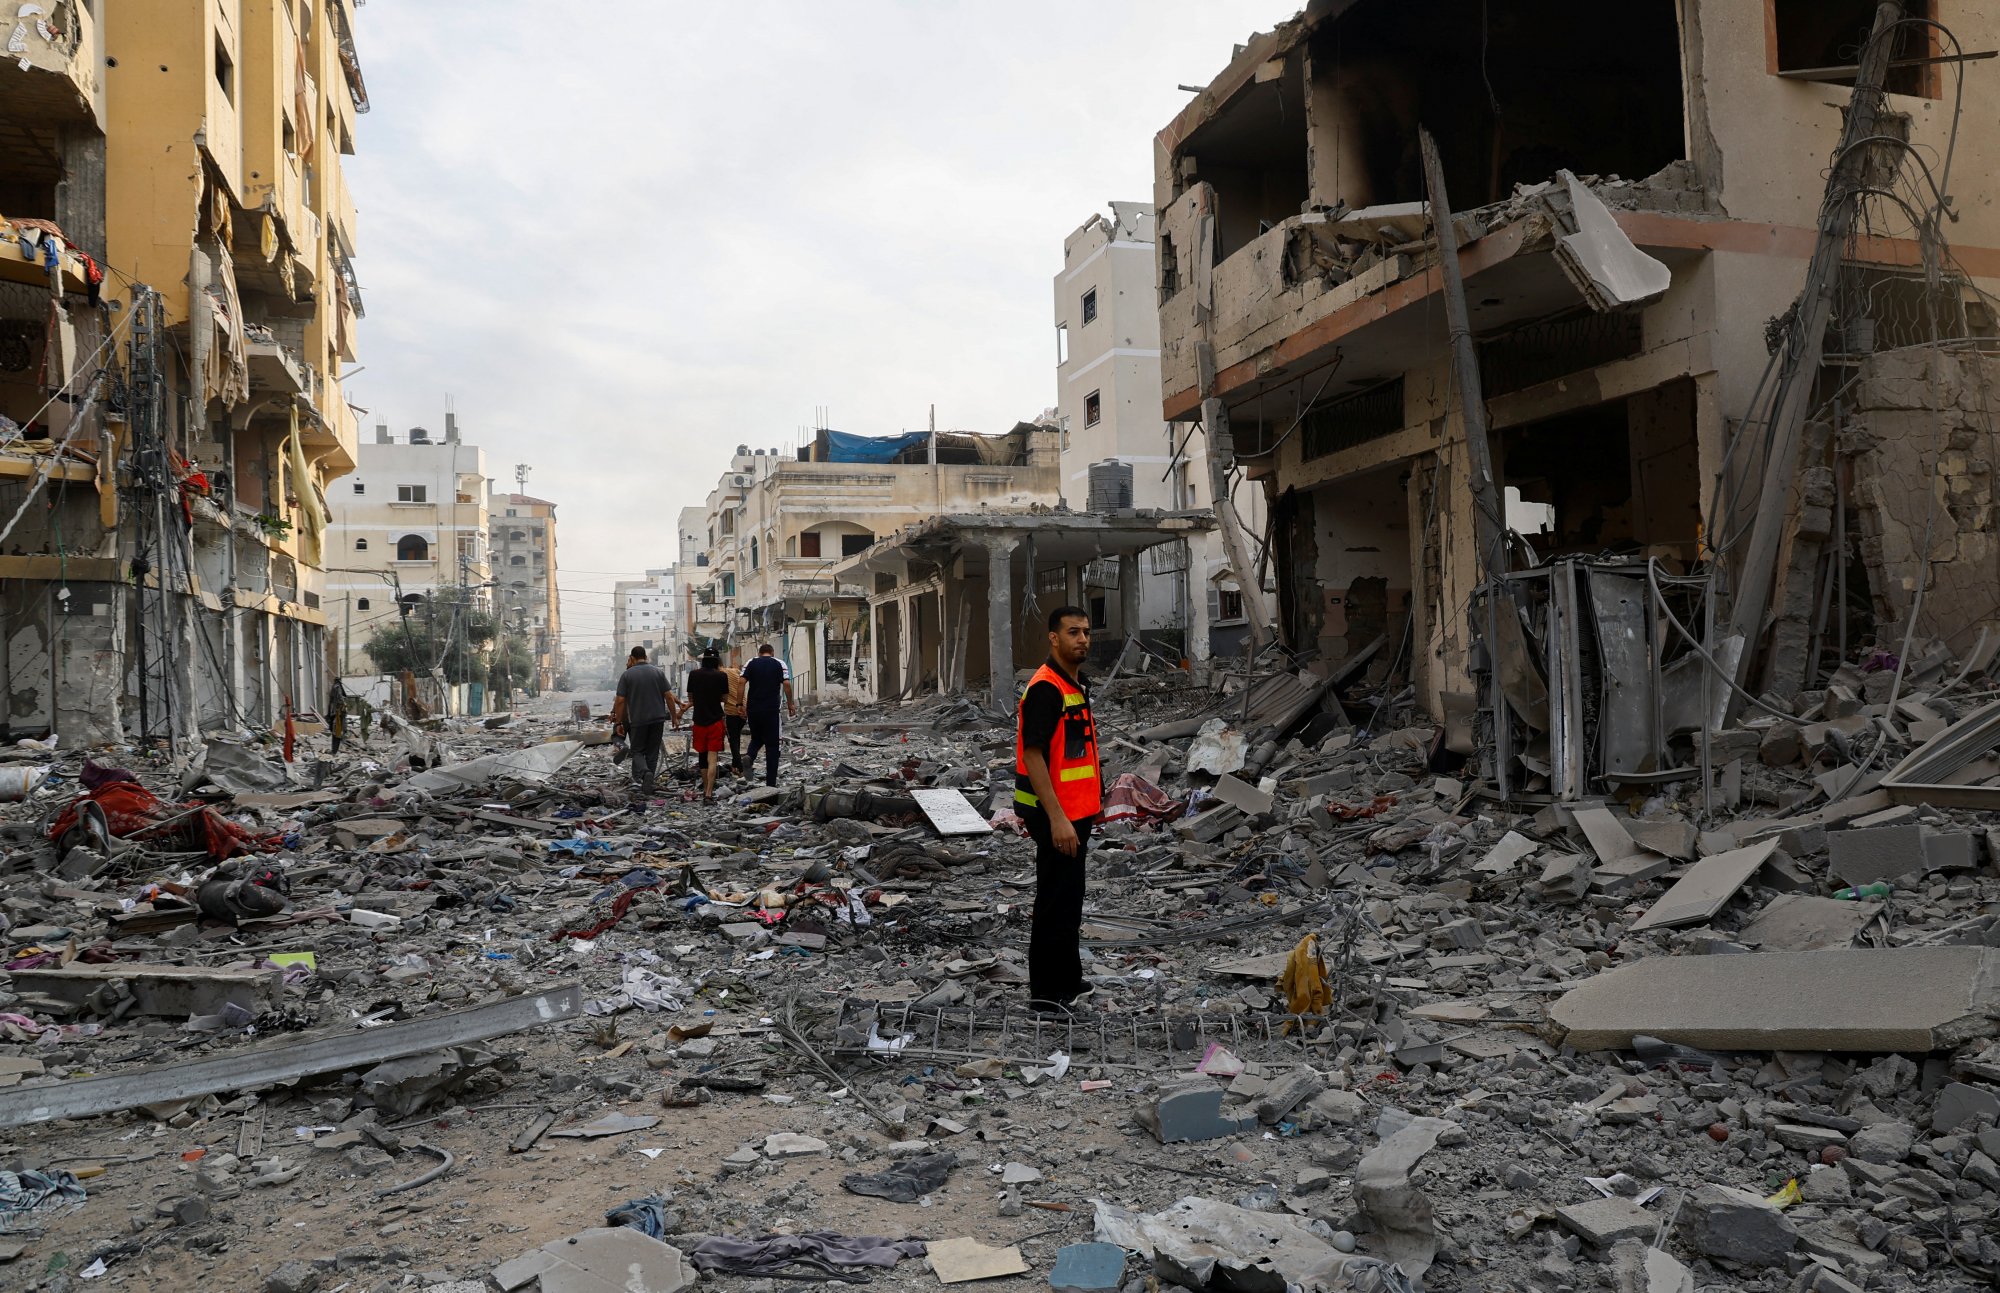 Χαμάς: Καταδικάζει το «ανήθικο και απάνθρωπο» βέτο των ΗΠΑ ενάντια στην κατάπαυση του πυρός στη Γάζα